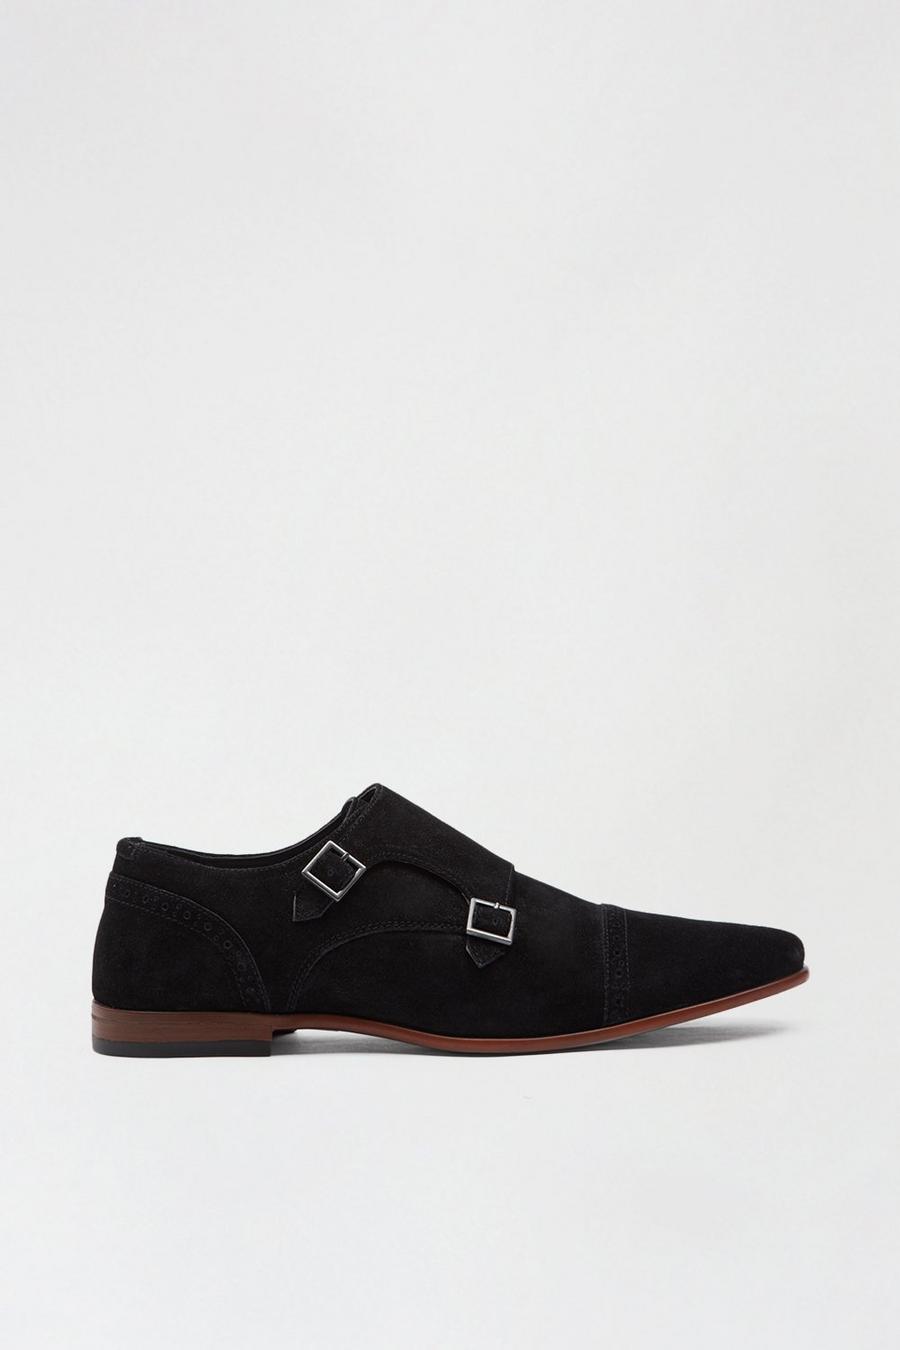 Beckett Monk Shoes